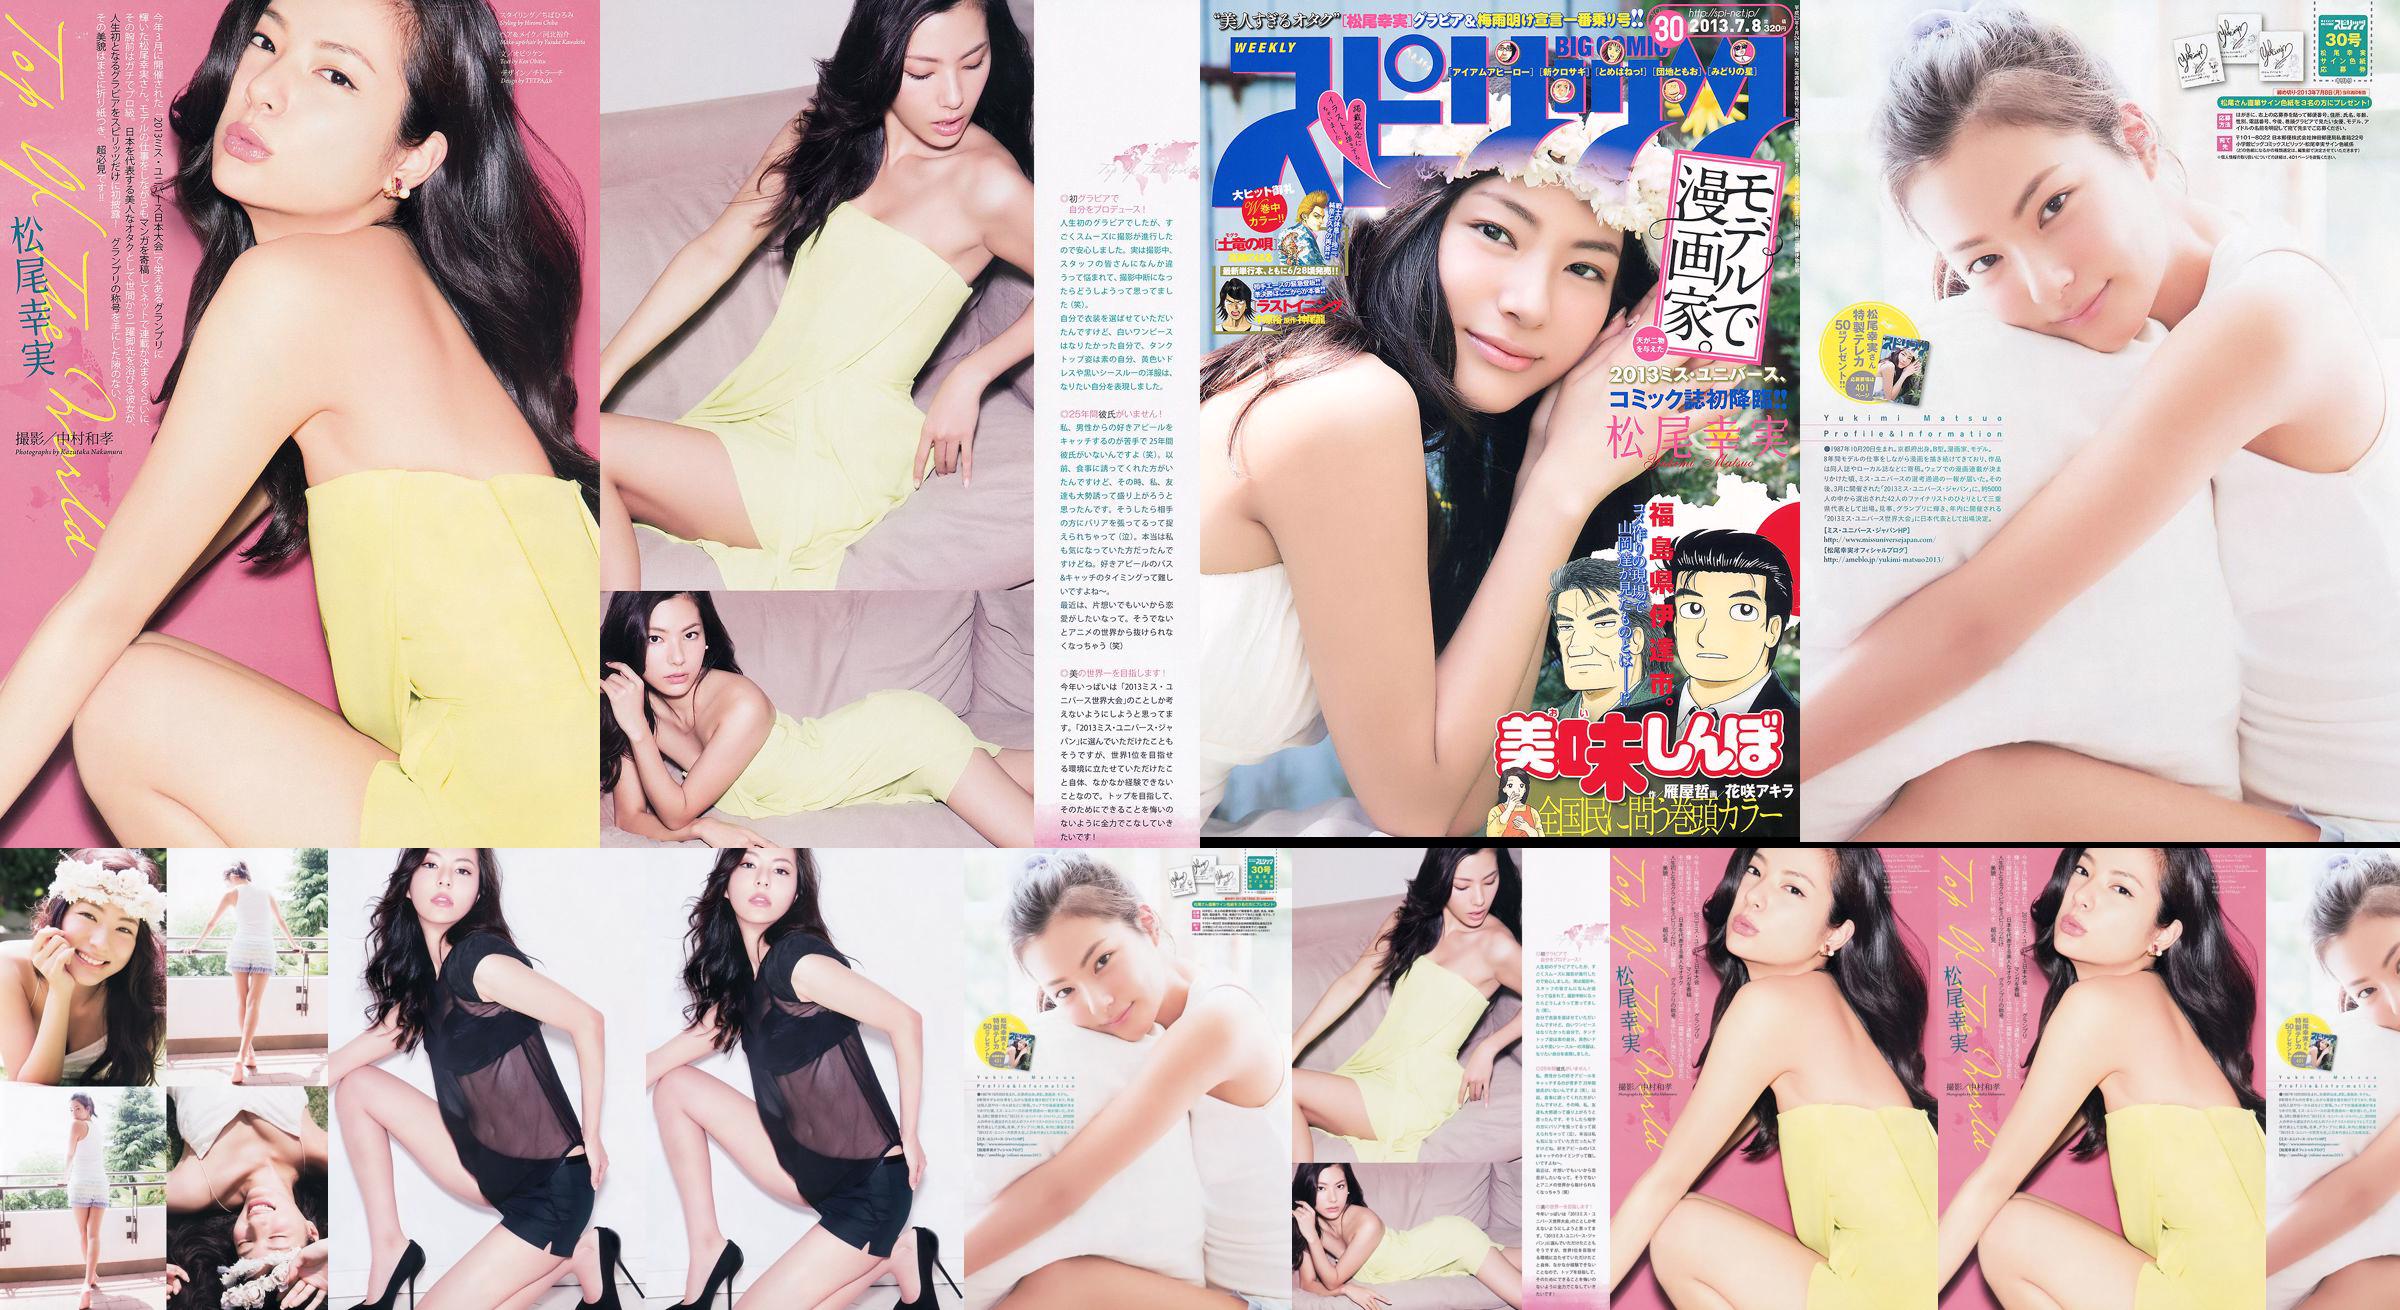 [Weekly Big Comic Spirits] Komi Matsuo 2013 No.30 Photo Magazine No.81e674 Pagina 1